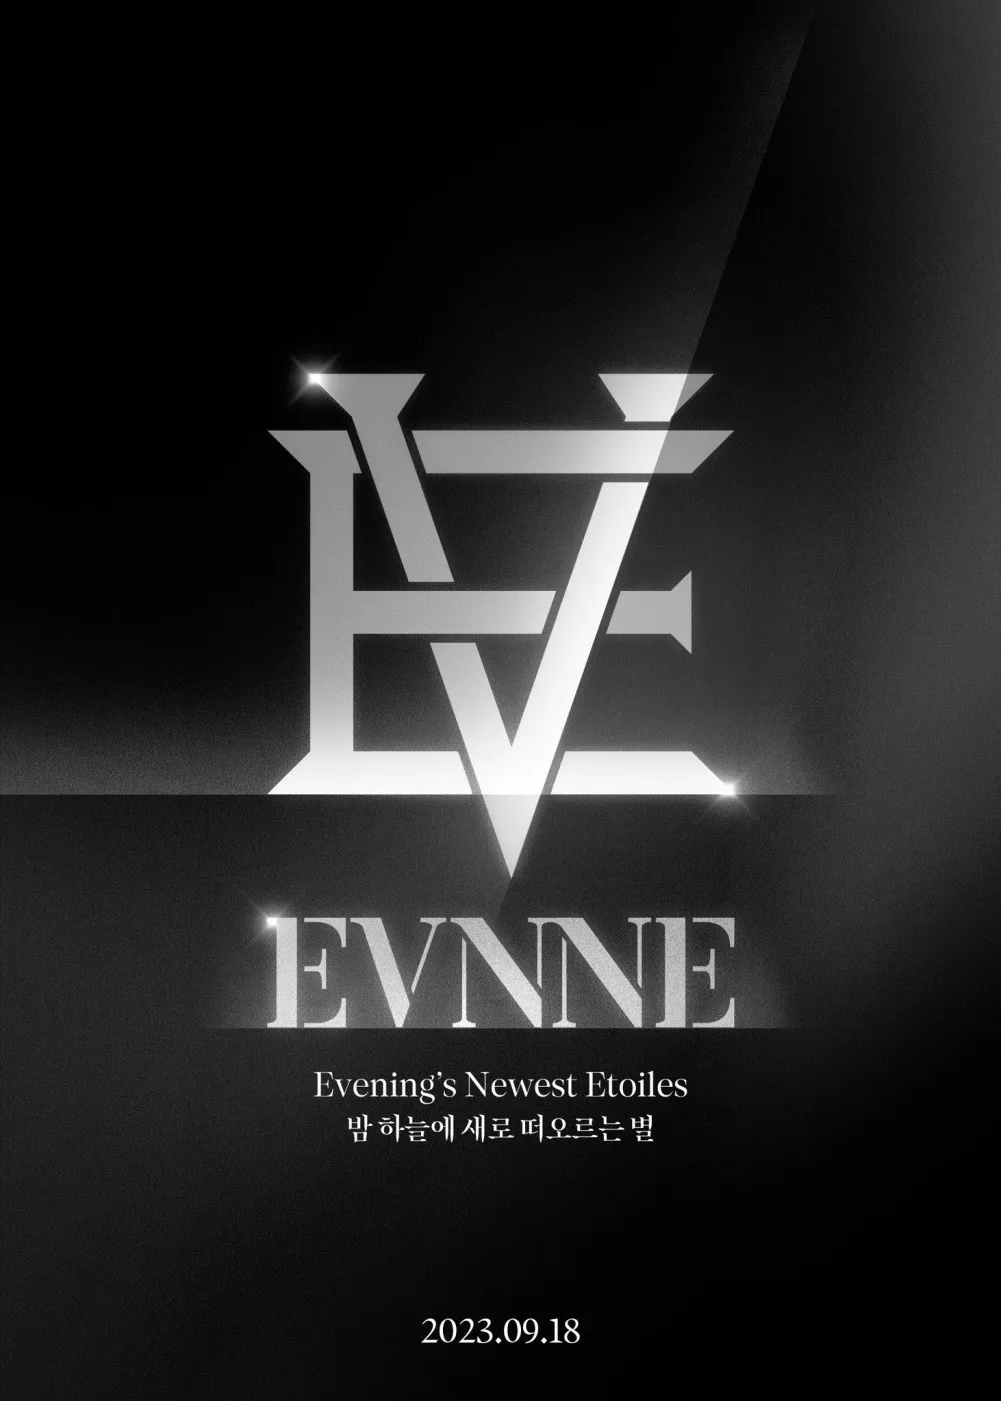 EVNNE, группа из участников шоу Boys Planet, объявила дату официального дебюта